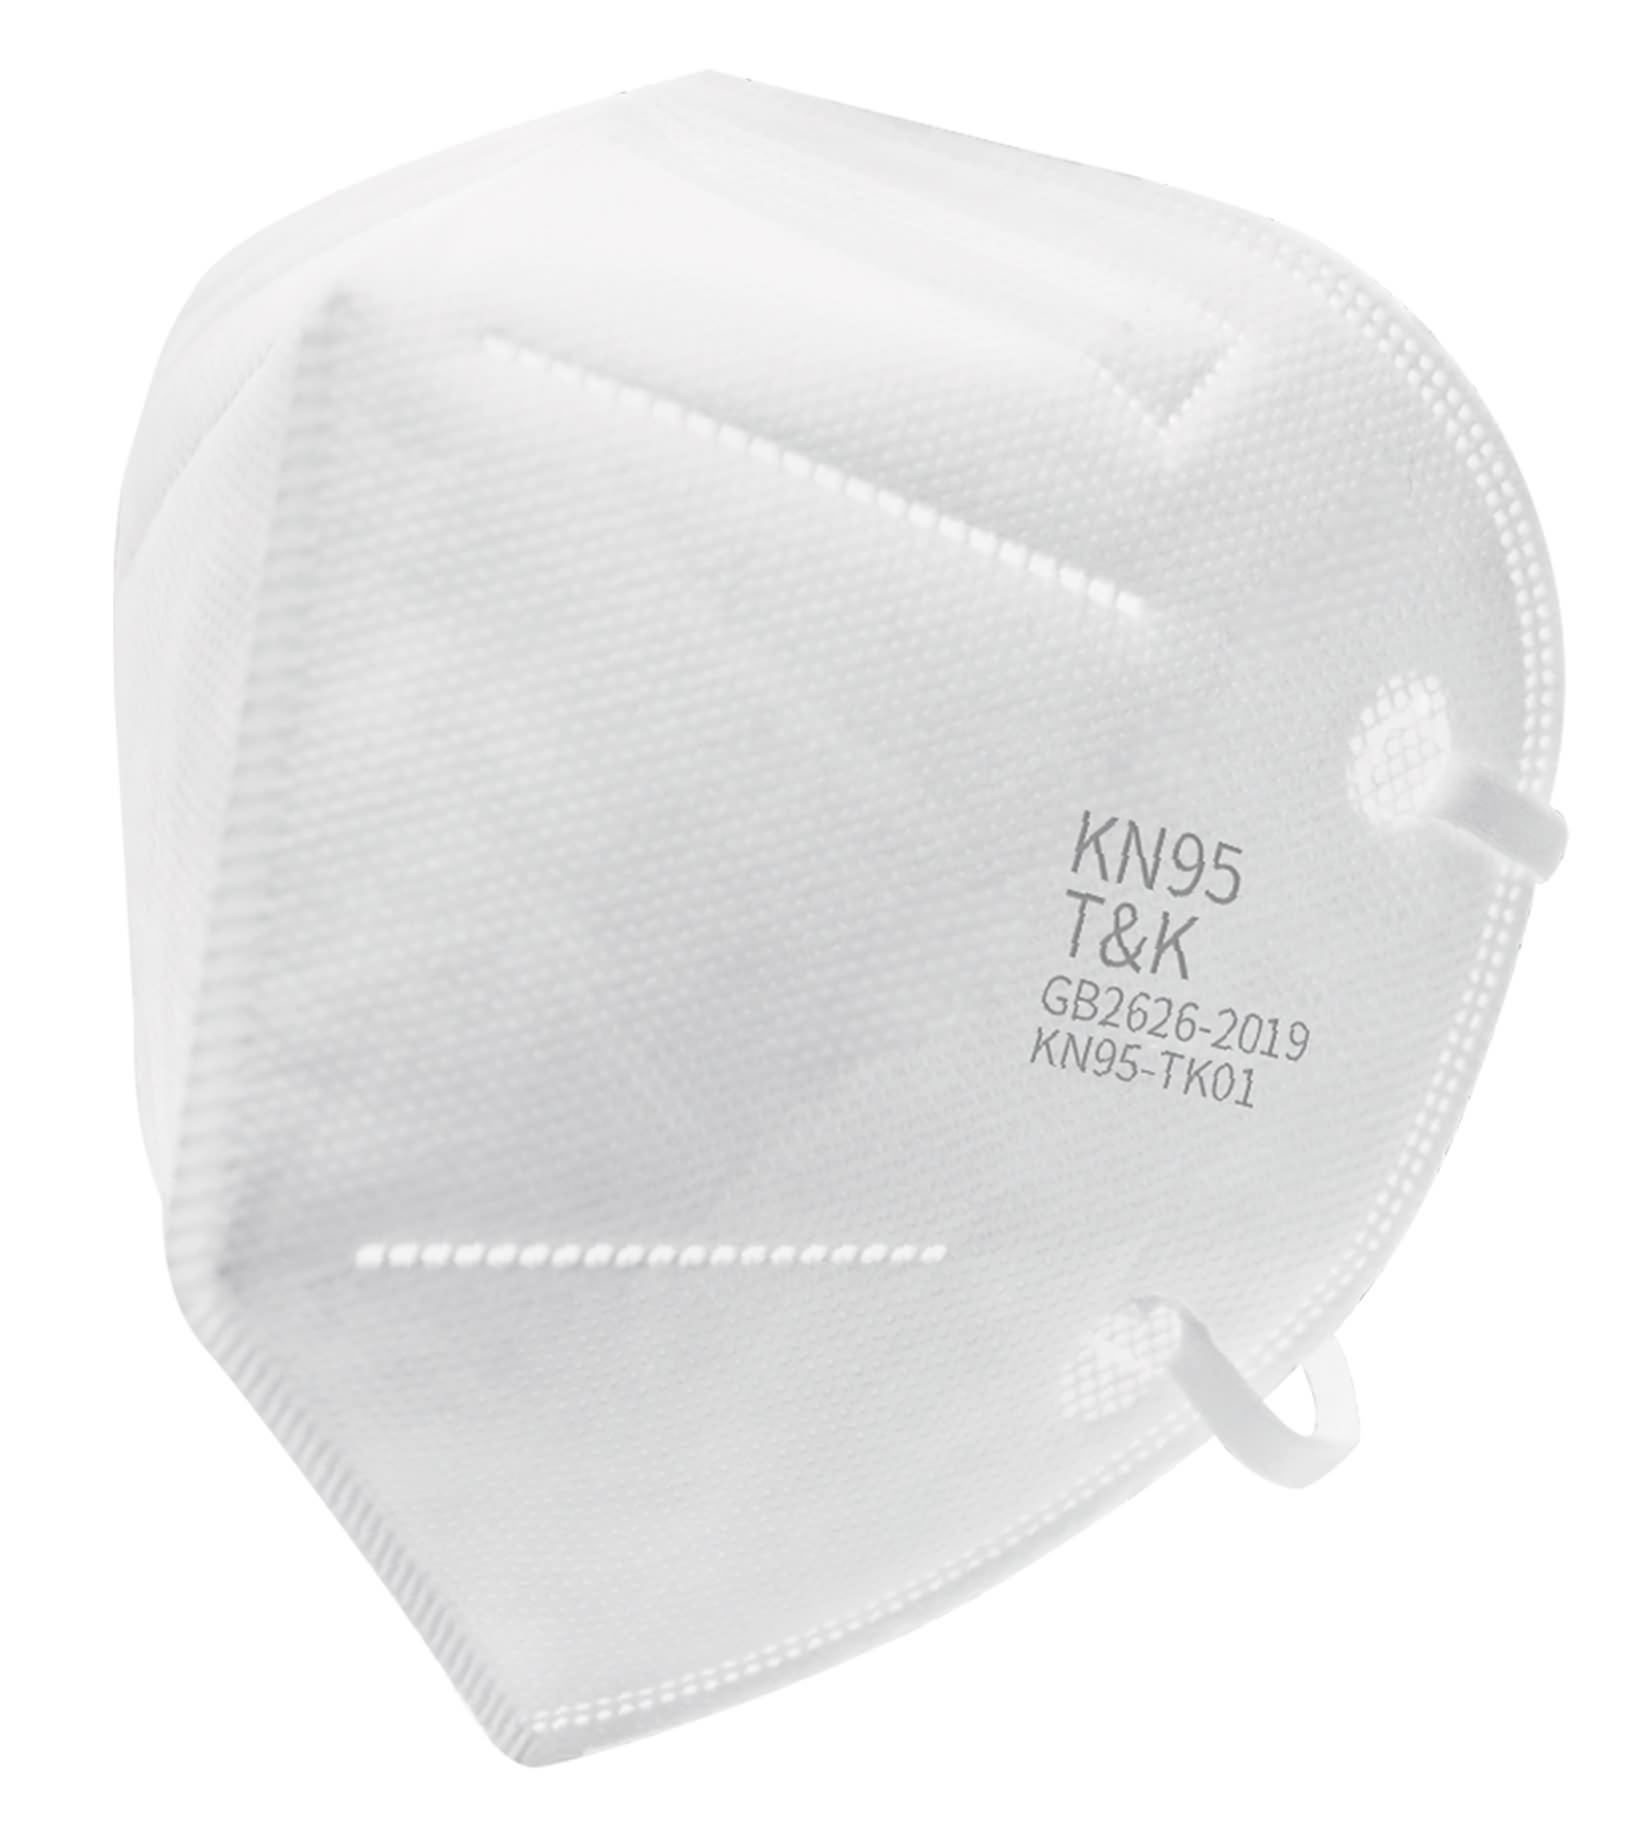 Masque de protection KN95 GB2626-2019